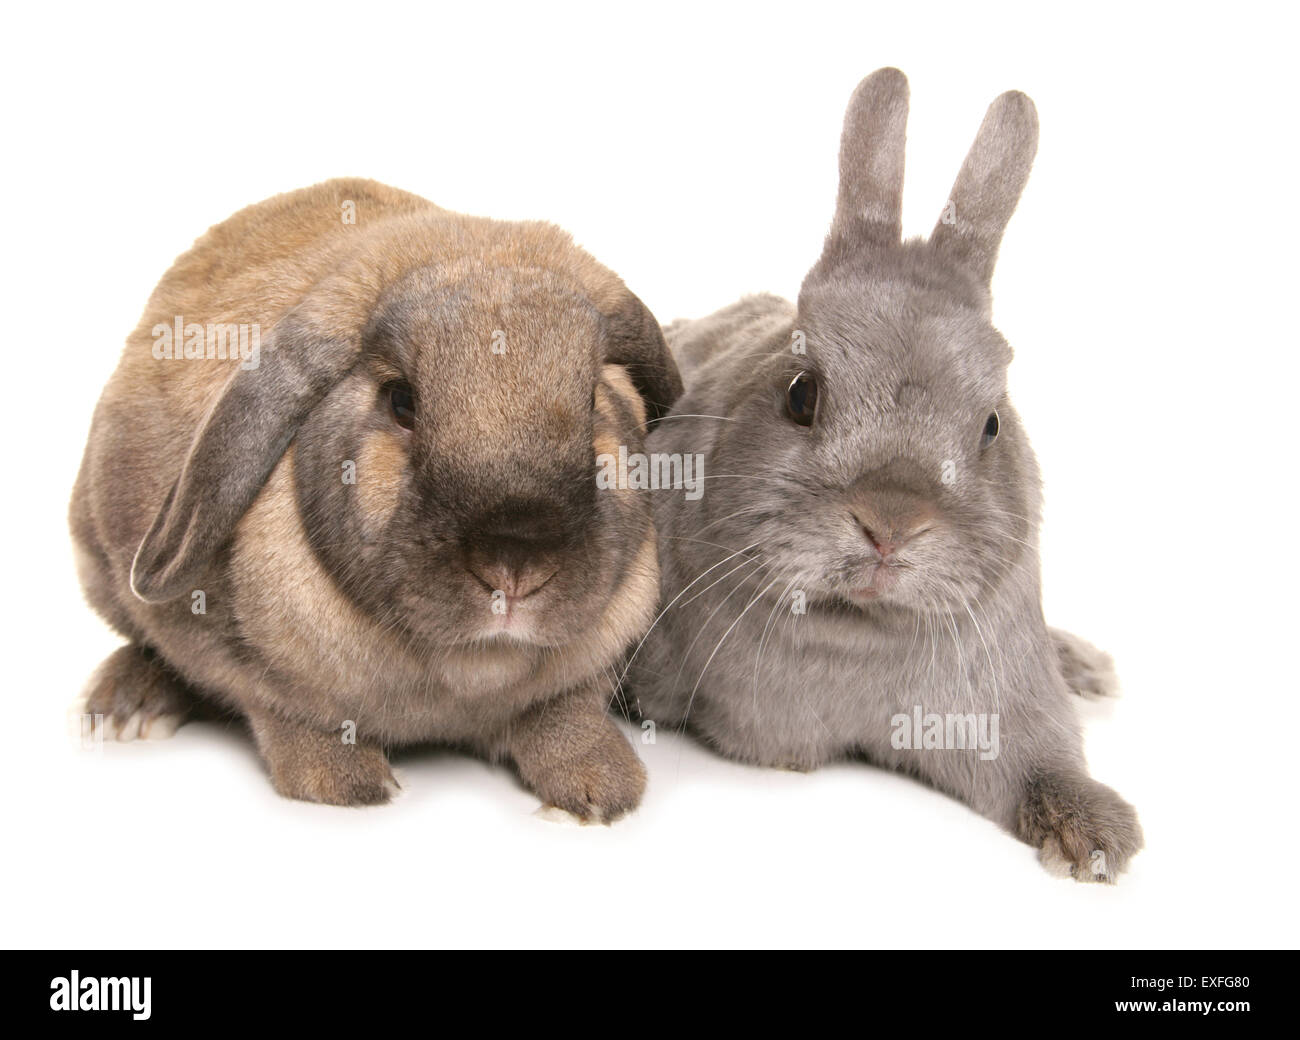 Les lapins domestiques deux adultes dans un studio Banque D'Images